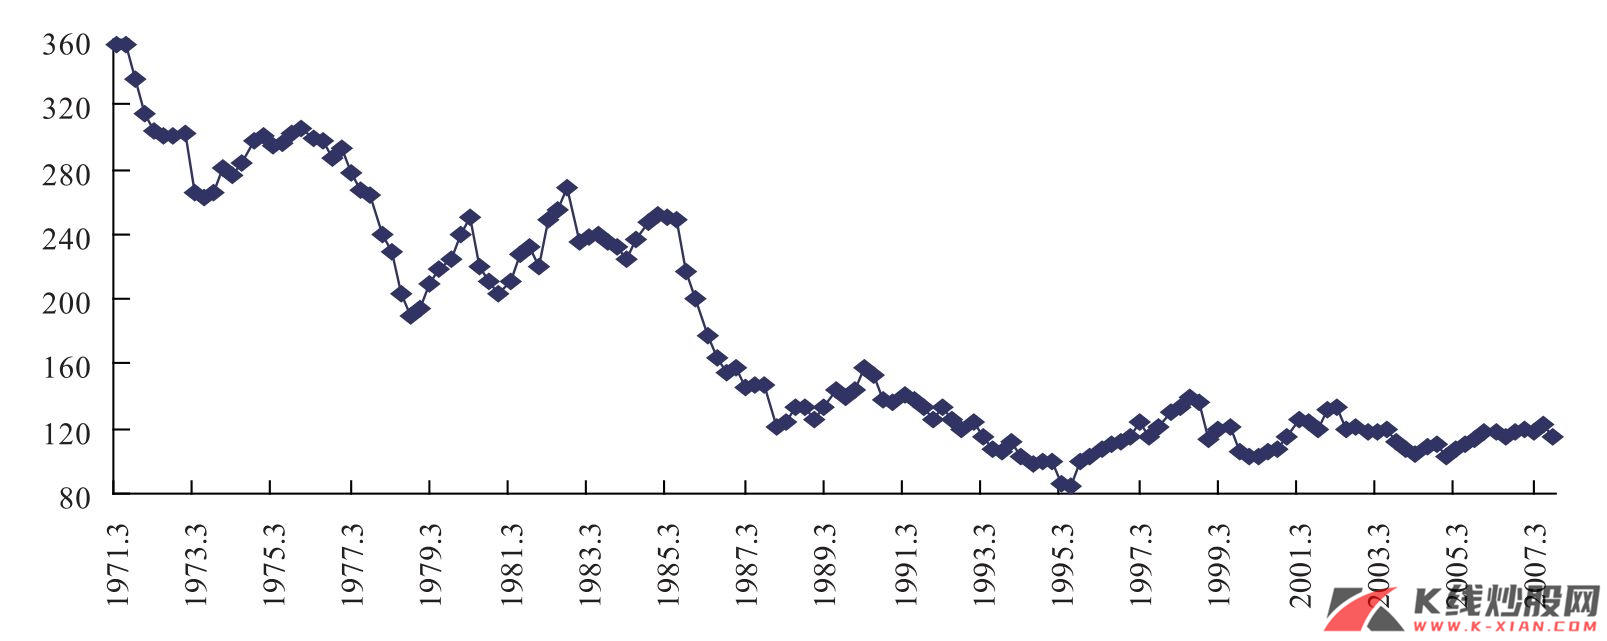 1973、1979年两次石油危机日元对美元贬值